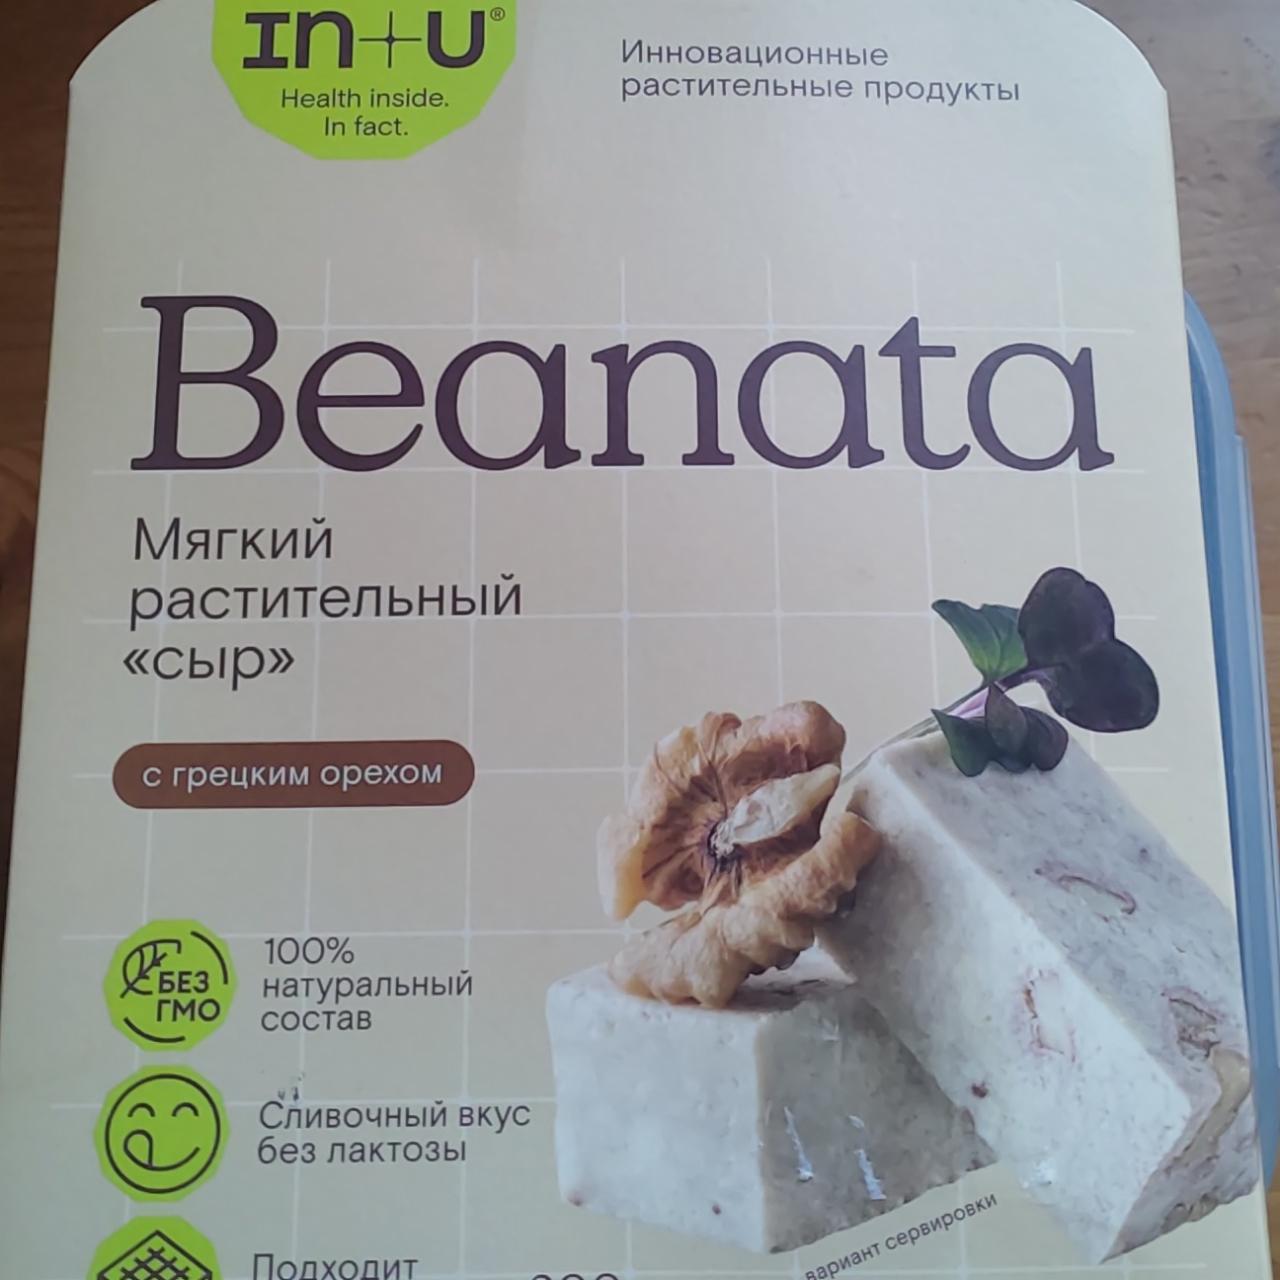 Фото - Мягкий растительный сыр с грецким орехом Beanata IN+U